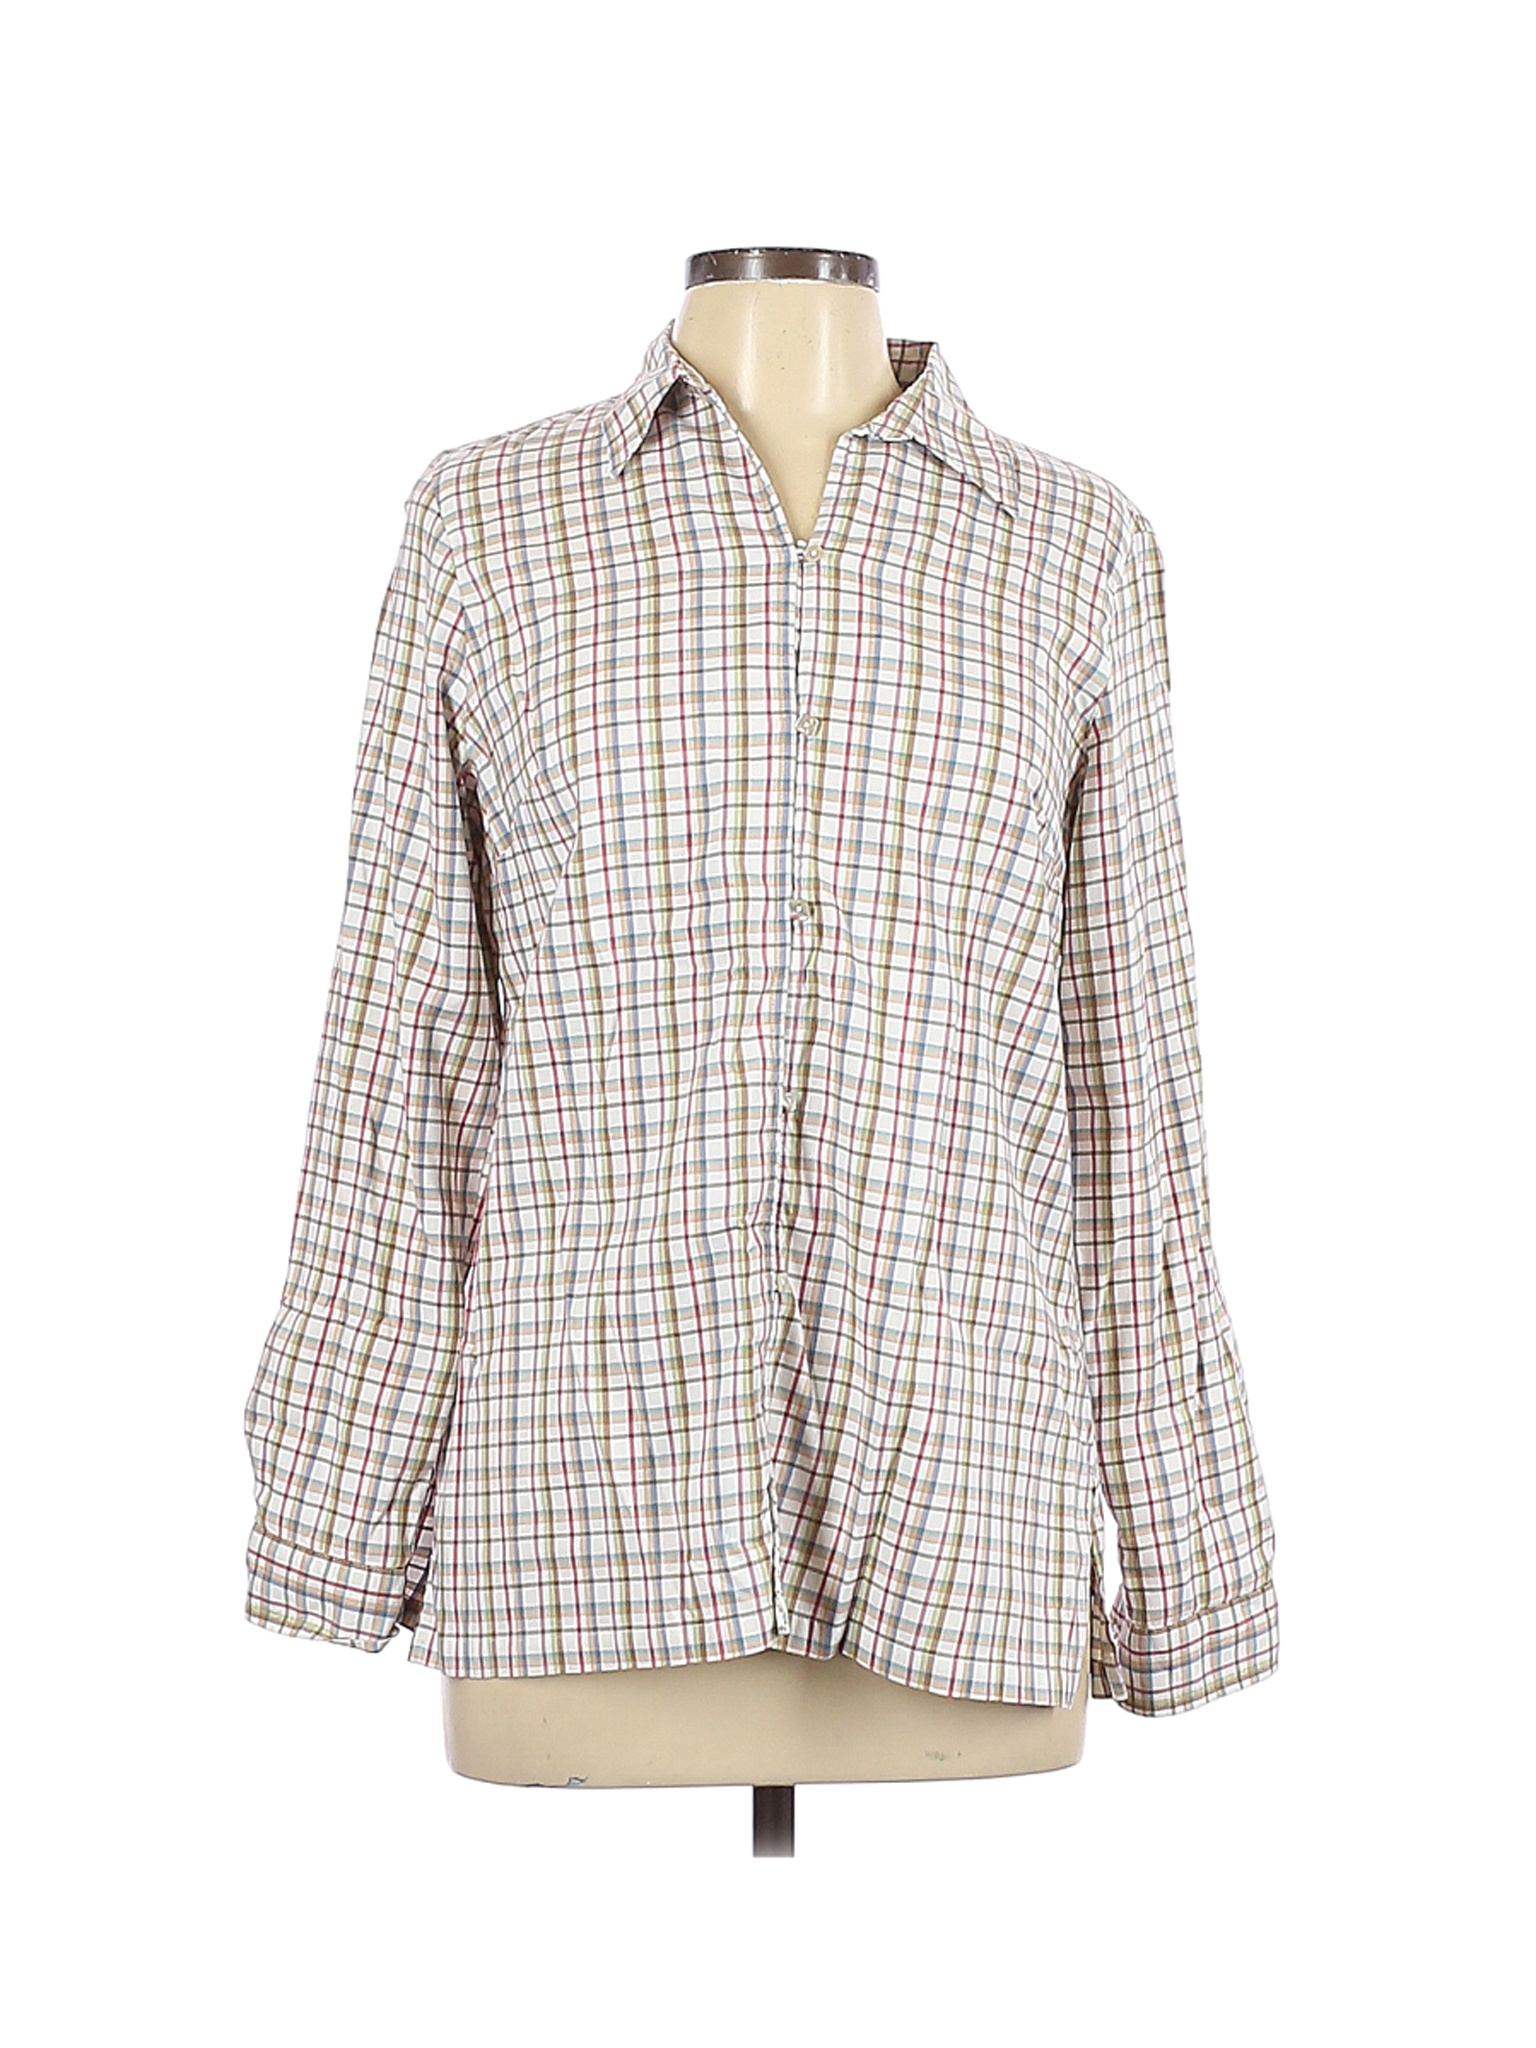 Crazy Horse Women Green Long Sleeve Button-Down Shirt M | eBay